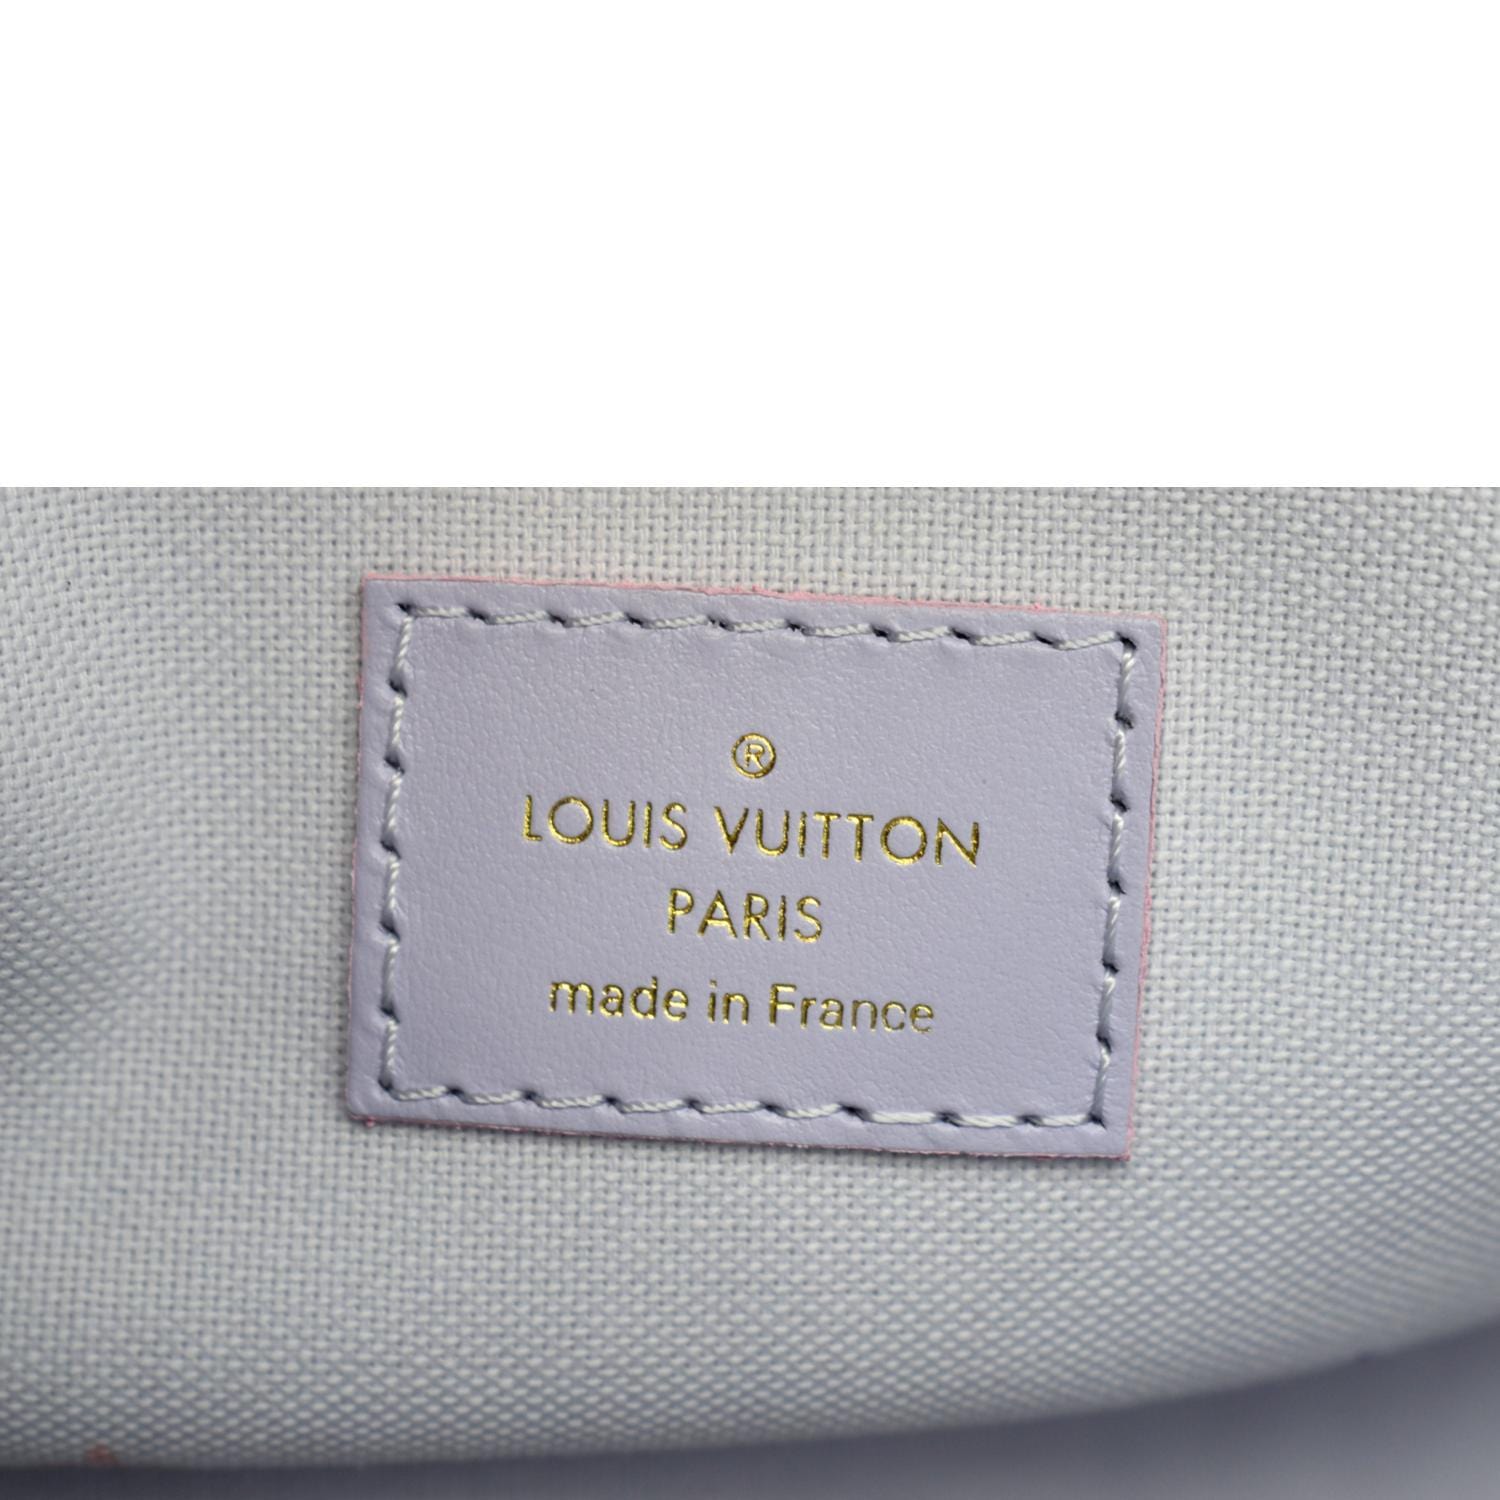 Sac Onthego Louis Vuitton Sunrise Pastel - Les Puces de Paris Saint-Ouen